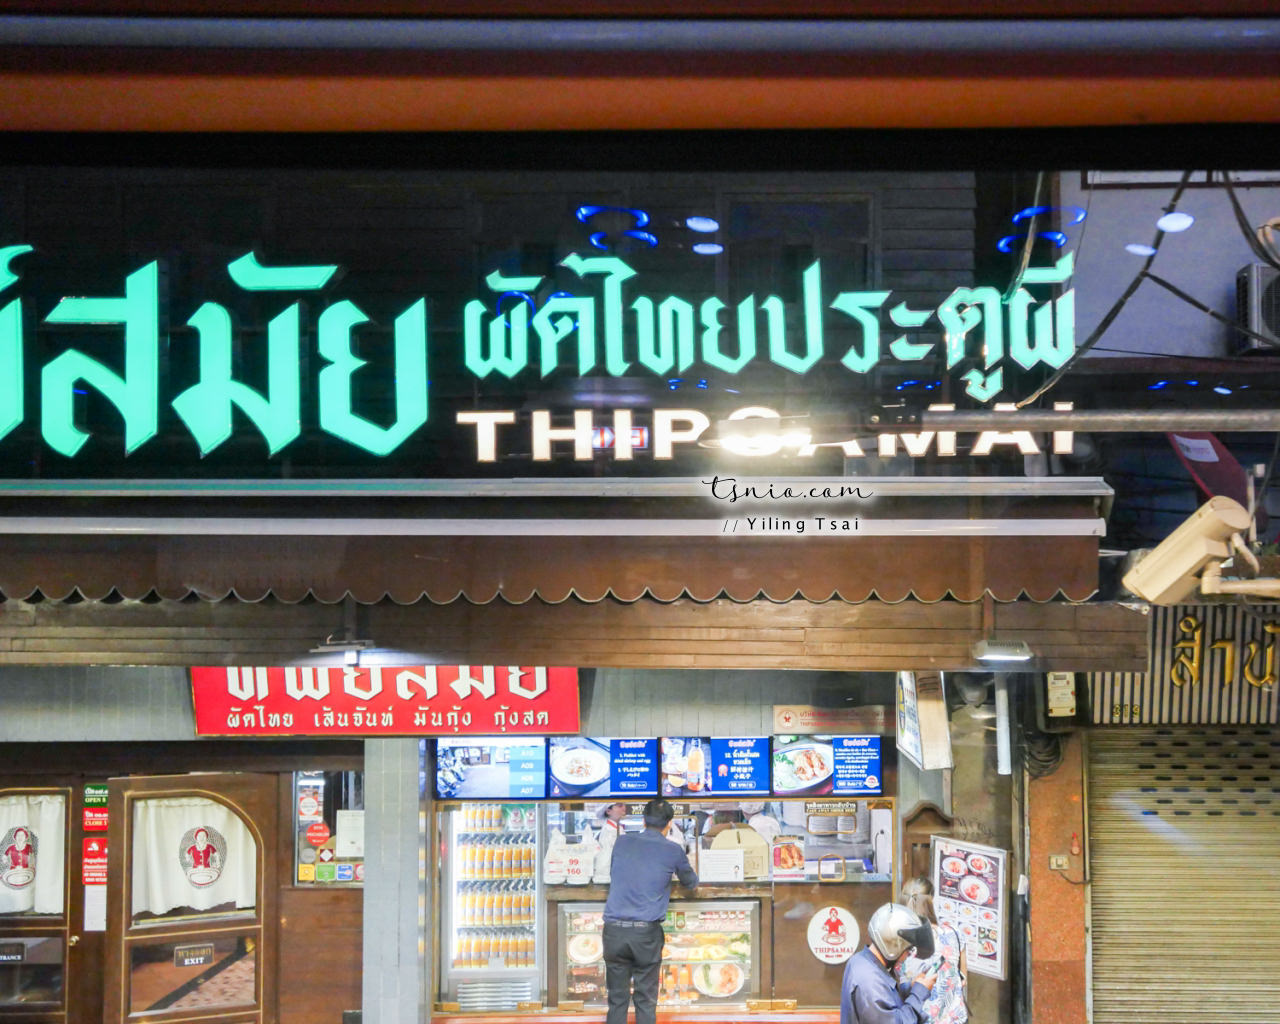 曼谷巴士美食之旅 老城區美其林美食饗宴 Thai Bus Food Tour